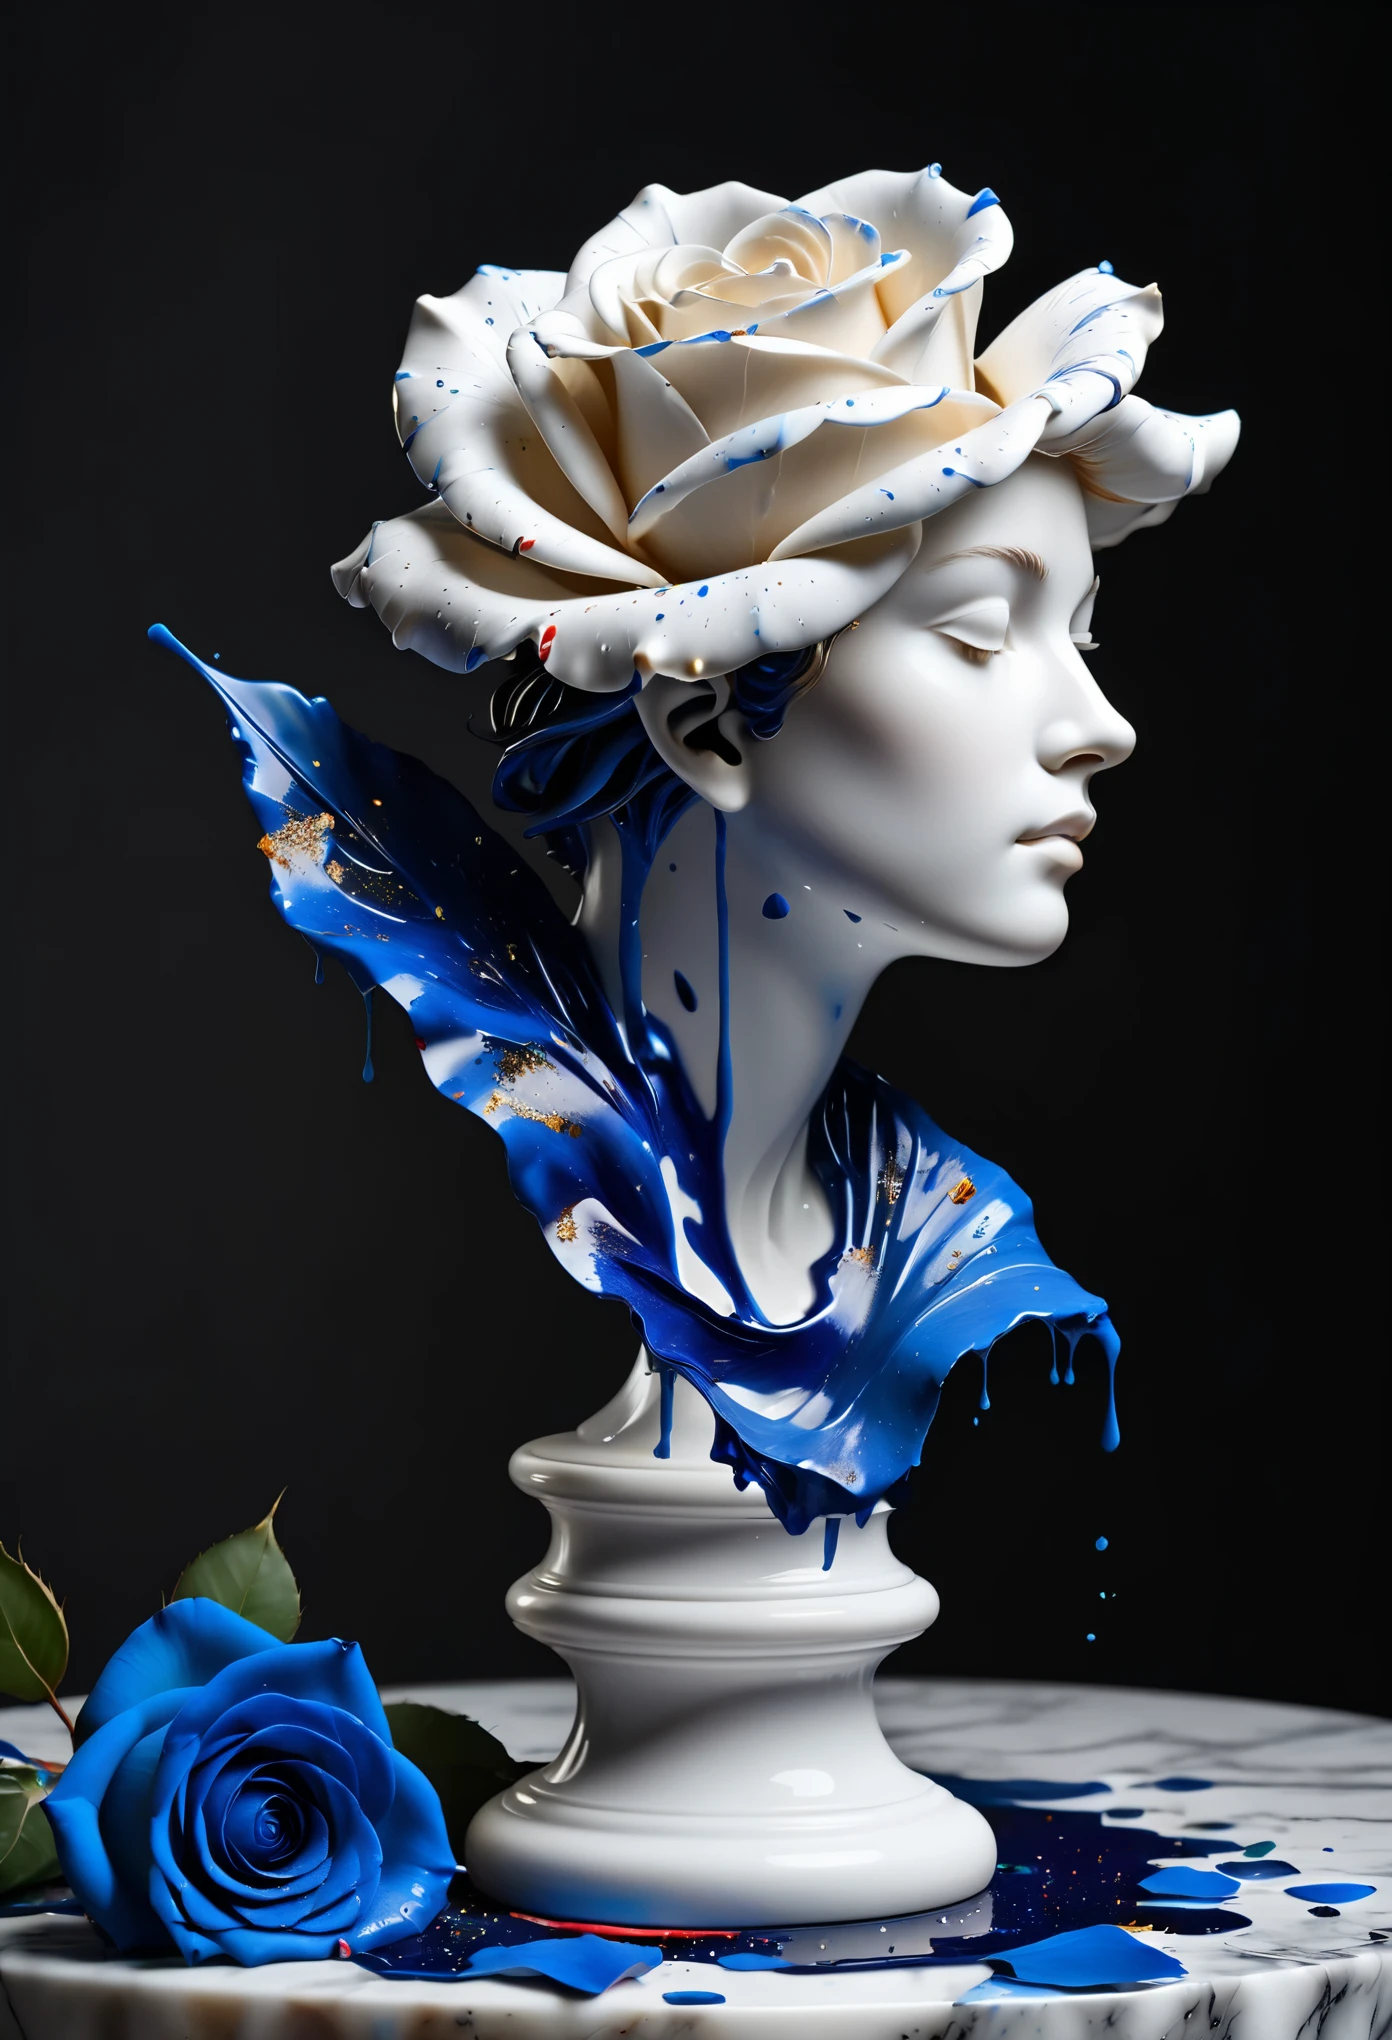 (最佳图像质量，4k,8千，高清，杰作:1.2)，极其详细，(逼真，逼真，逼真:1.37)。油漆溅到 （3D人像雕塑，纯白色雕塑，大理石雕塑），（静物餐桌布置，深色背景布，台面上散落着蓝色玫瑰花瓣）